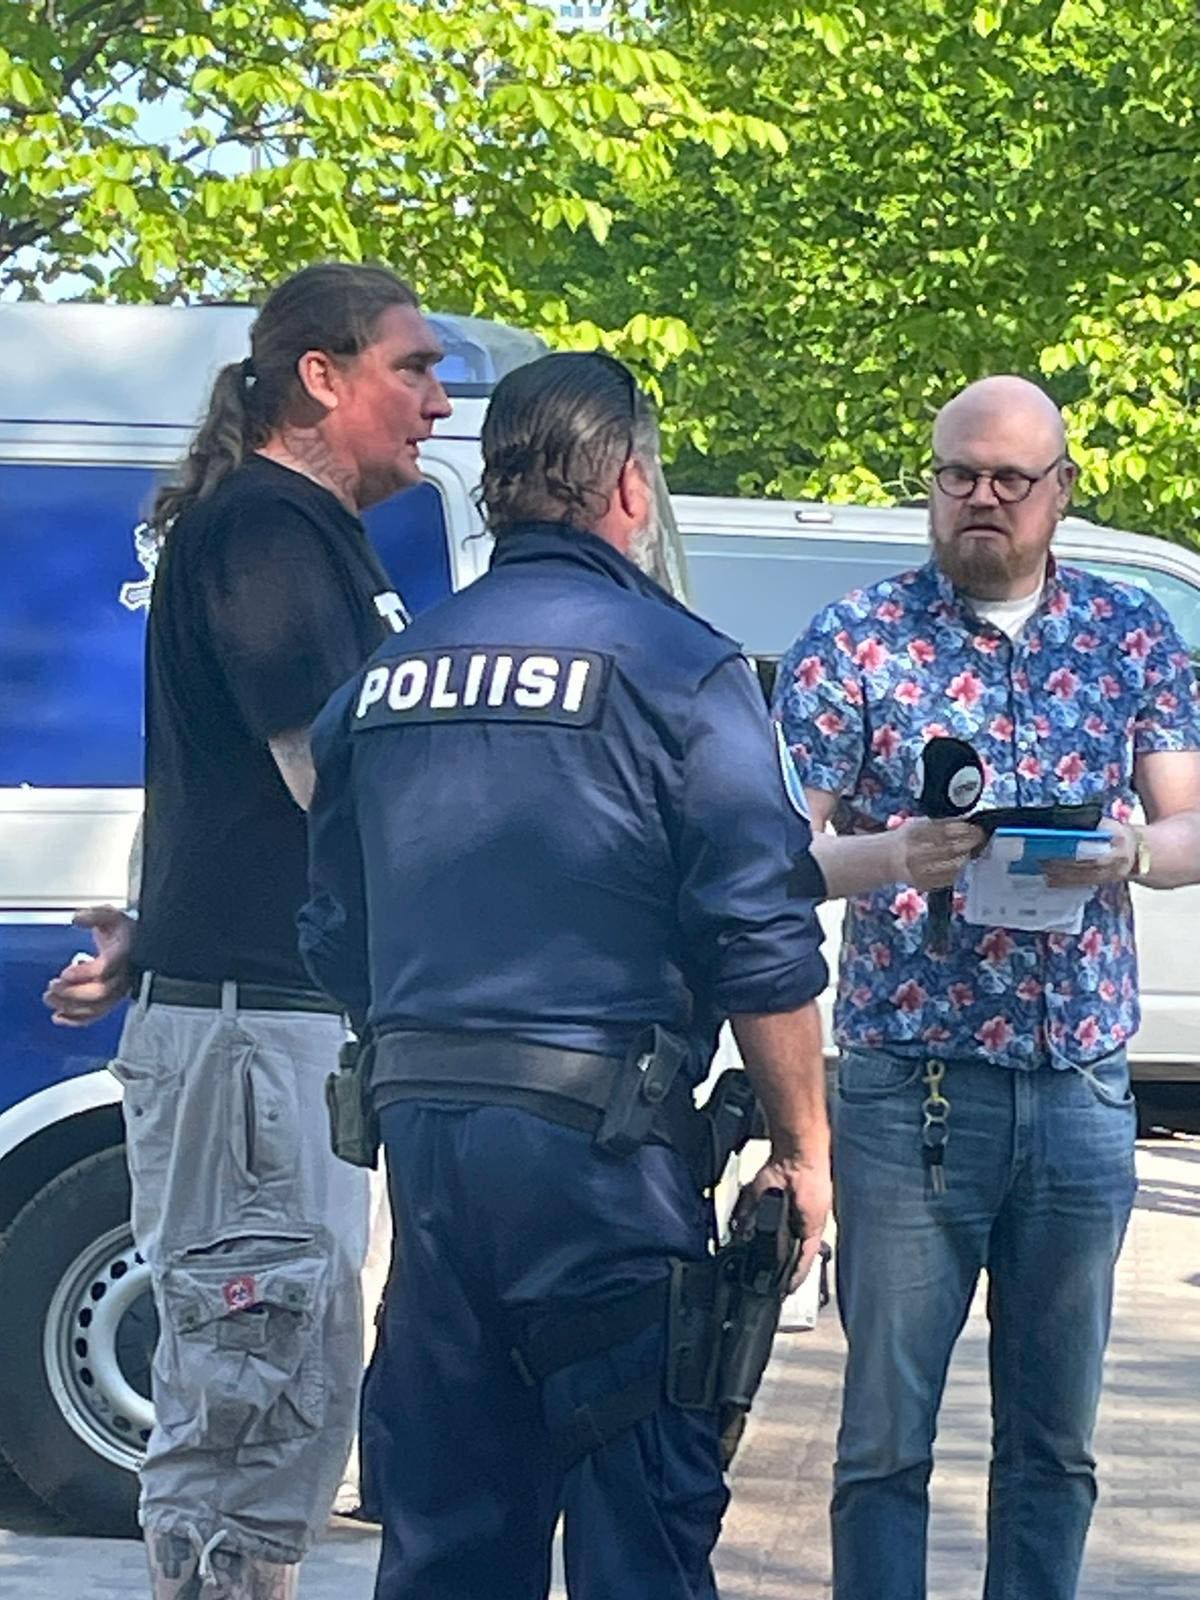 Juha-Pekka Pääskysaari selgitab kujunenud olukorda politseile ja ajakirjandusele.